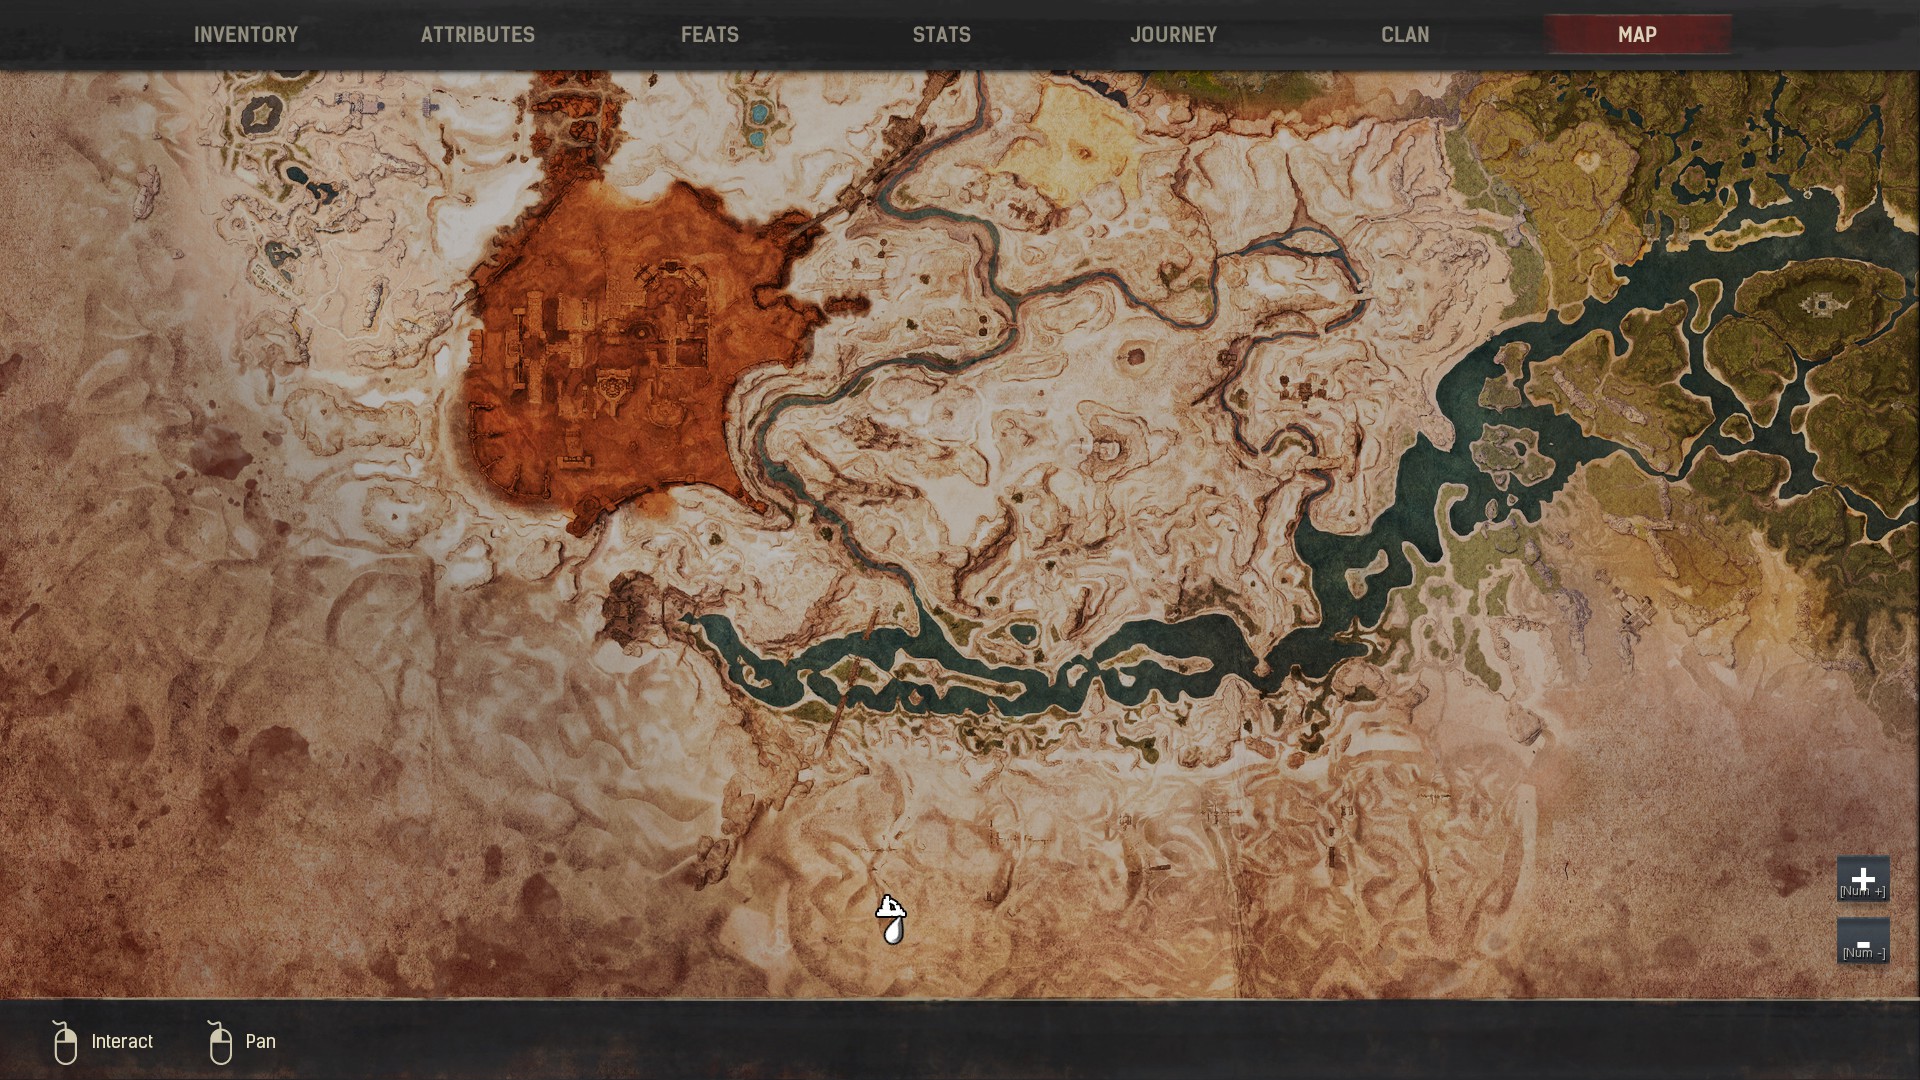 conan exiles interactive map 2020